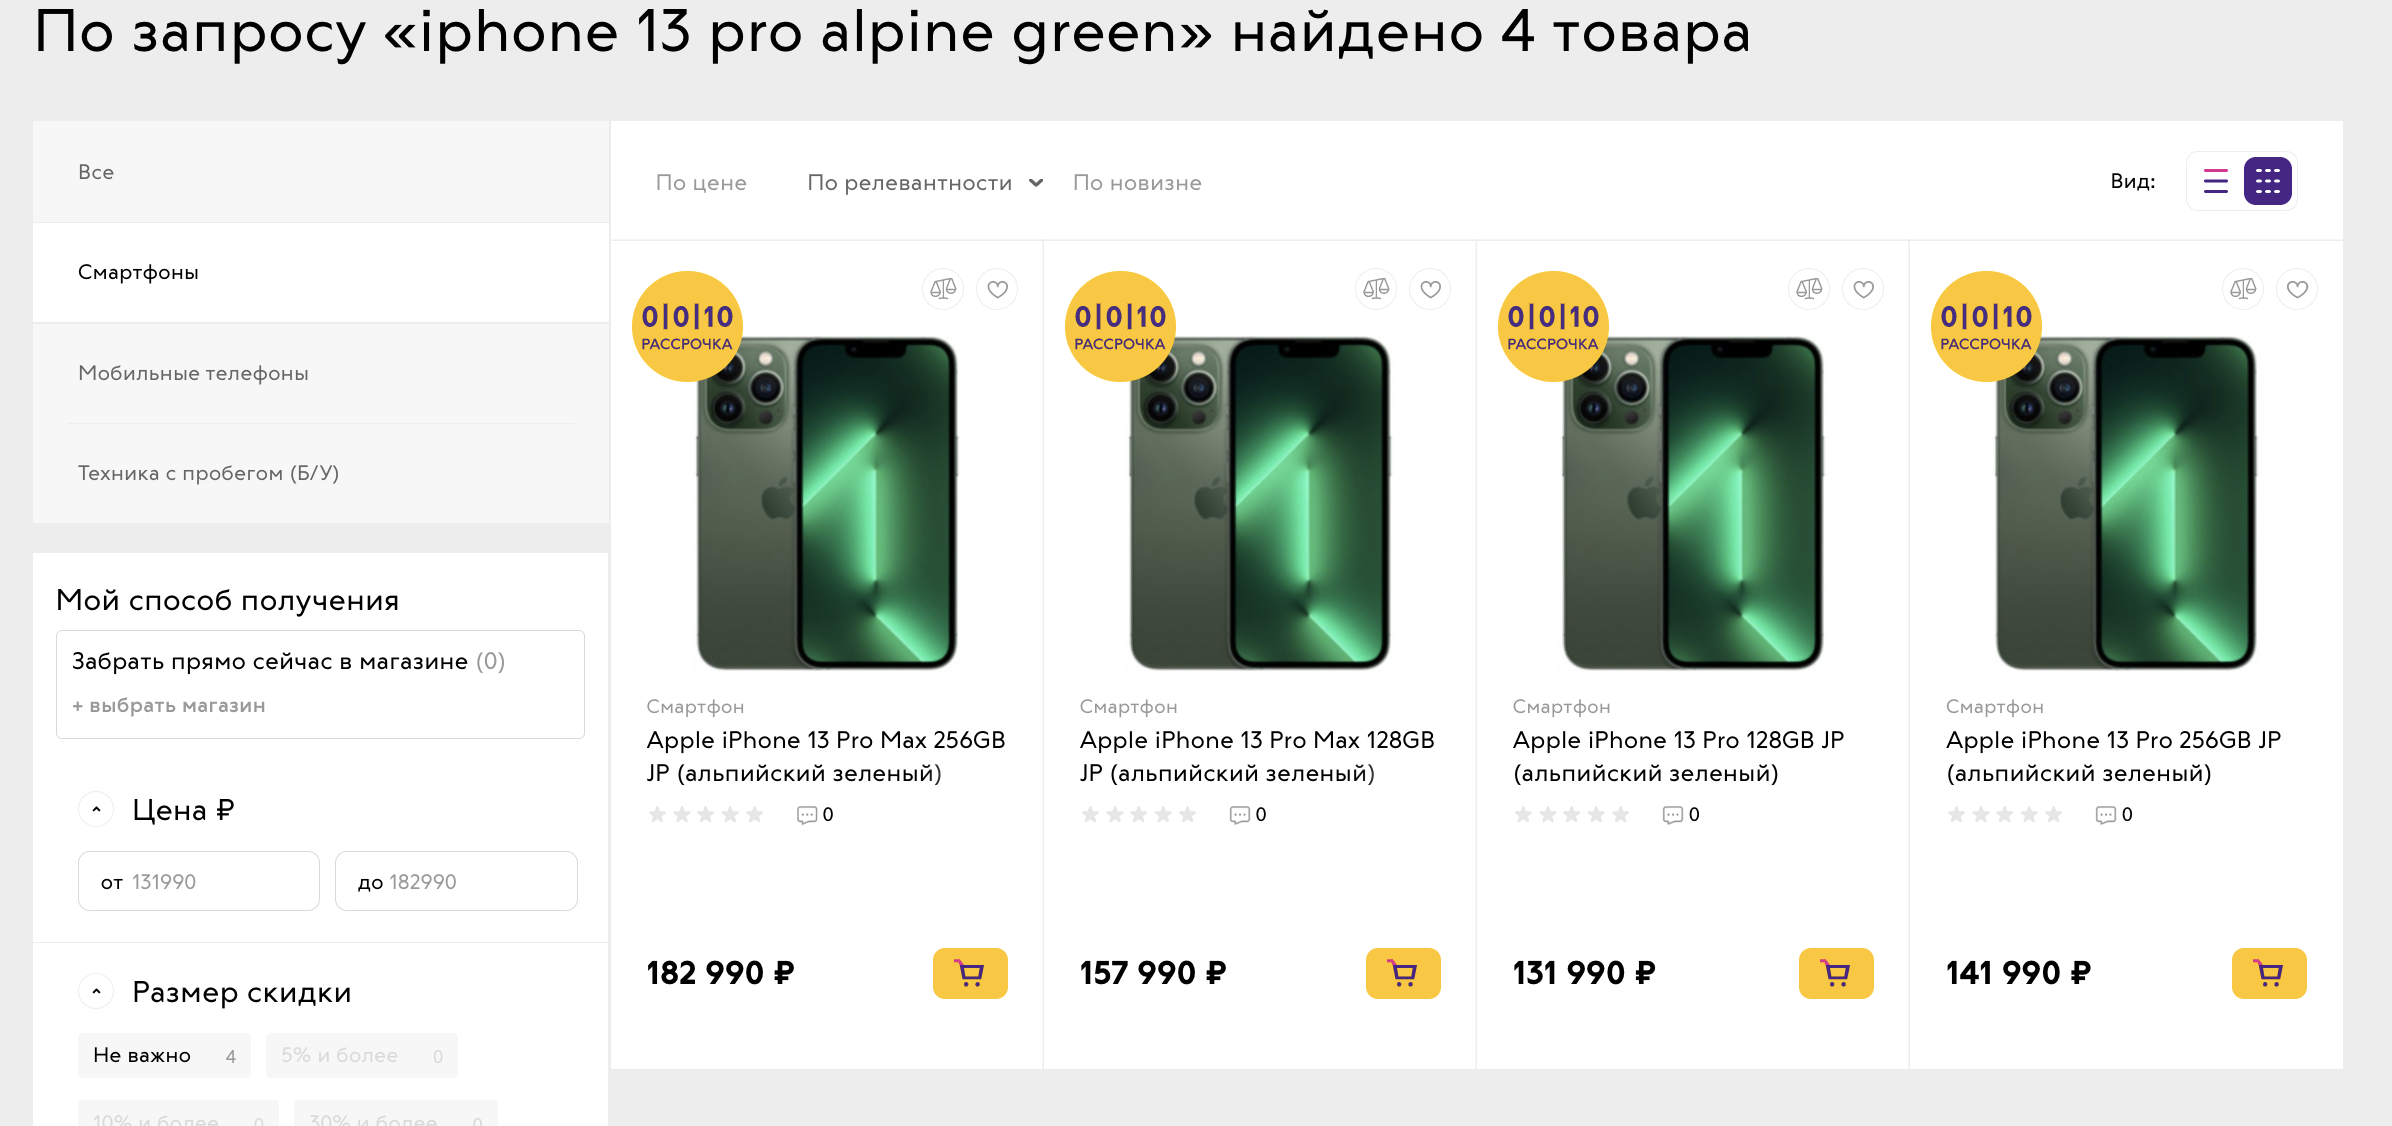 Айфон 13 про Макс зеленый. Iphone 13 Alpine Green. Iphone 13 Pro Alpine Green. Iphone 13 Pro Альпина Грин.